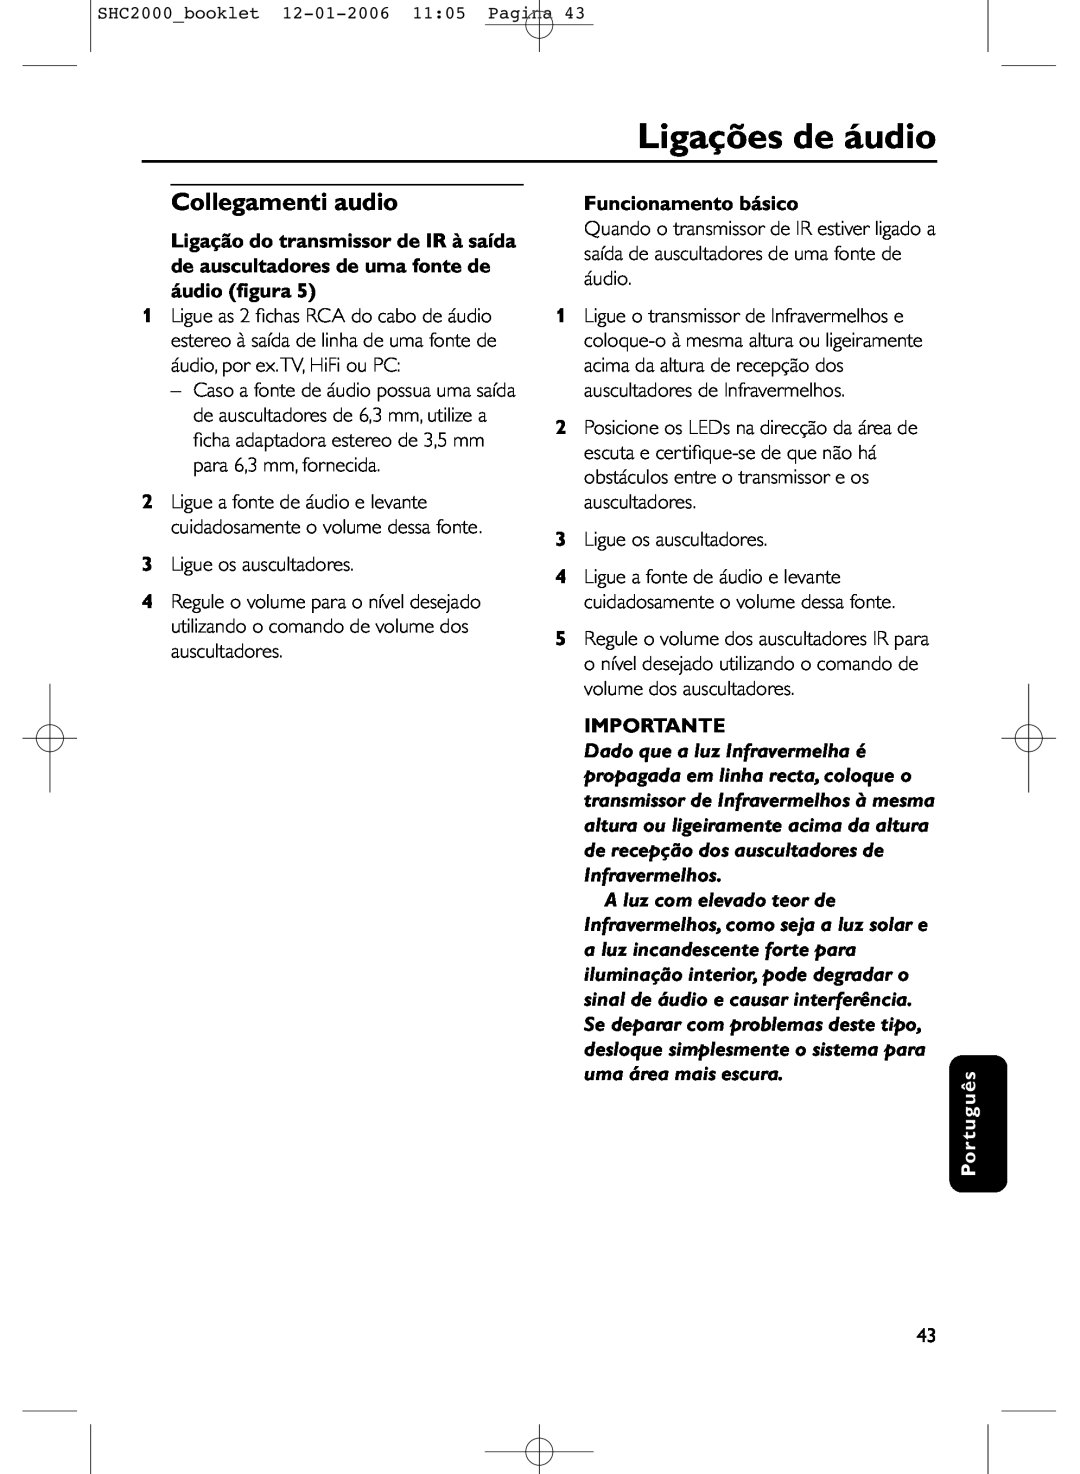 Philips SHC2000 manual Ligações de áudio, Collegamenti audio, Funcionamento básico, Importante, Português 